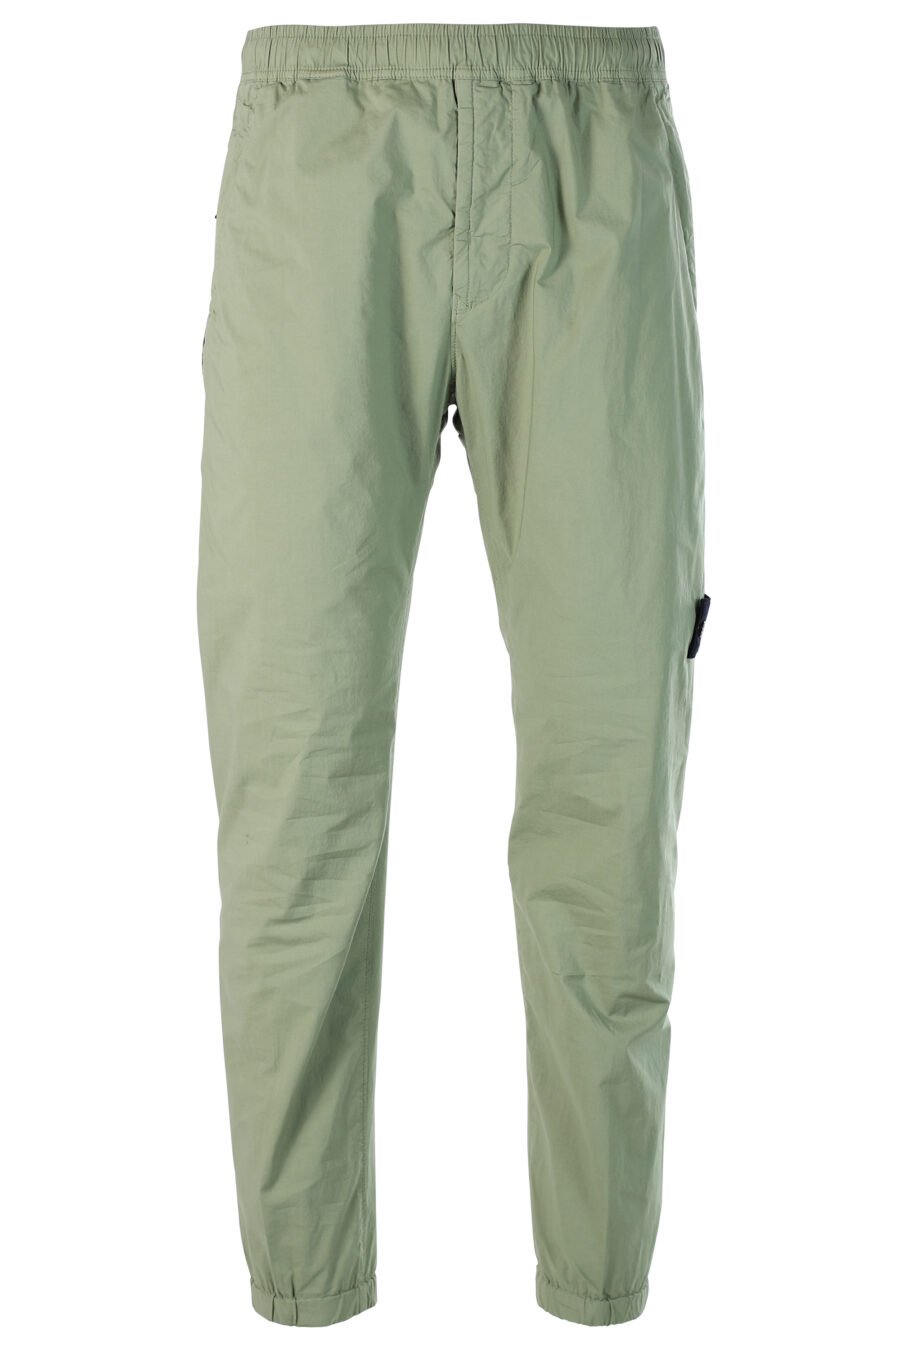 Pantalón verde militar estilo cargo y parche - 8052572549175